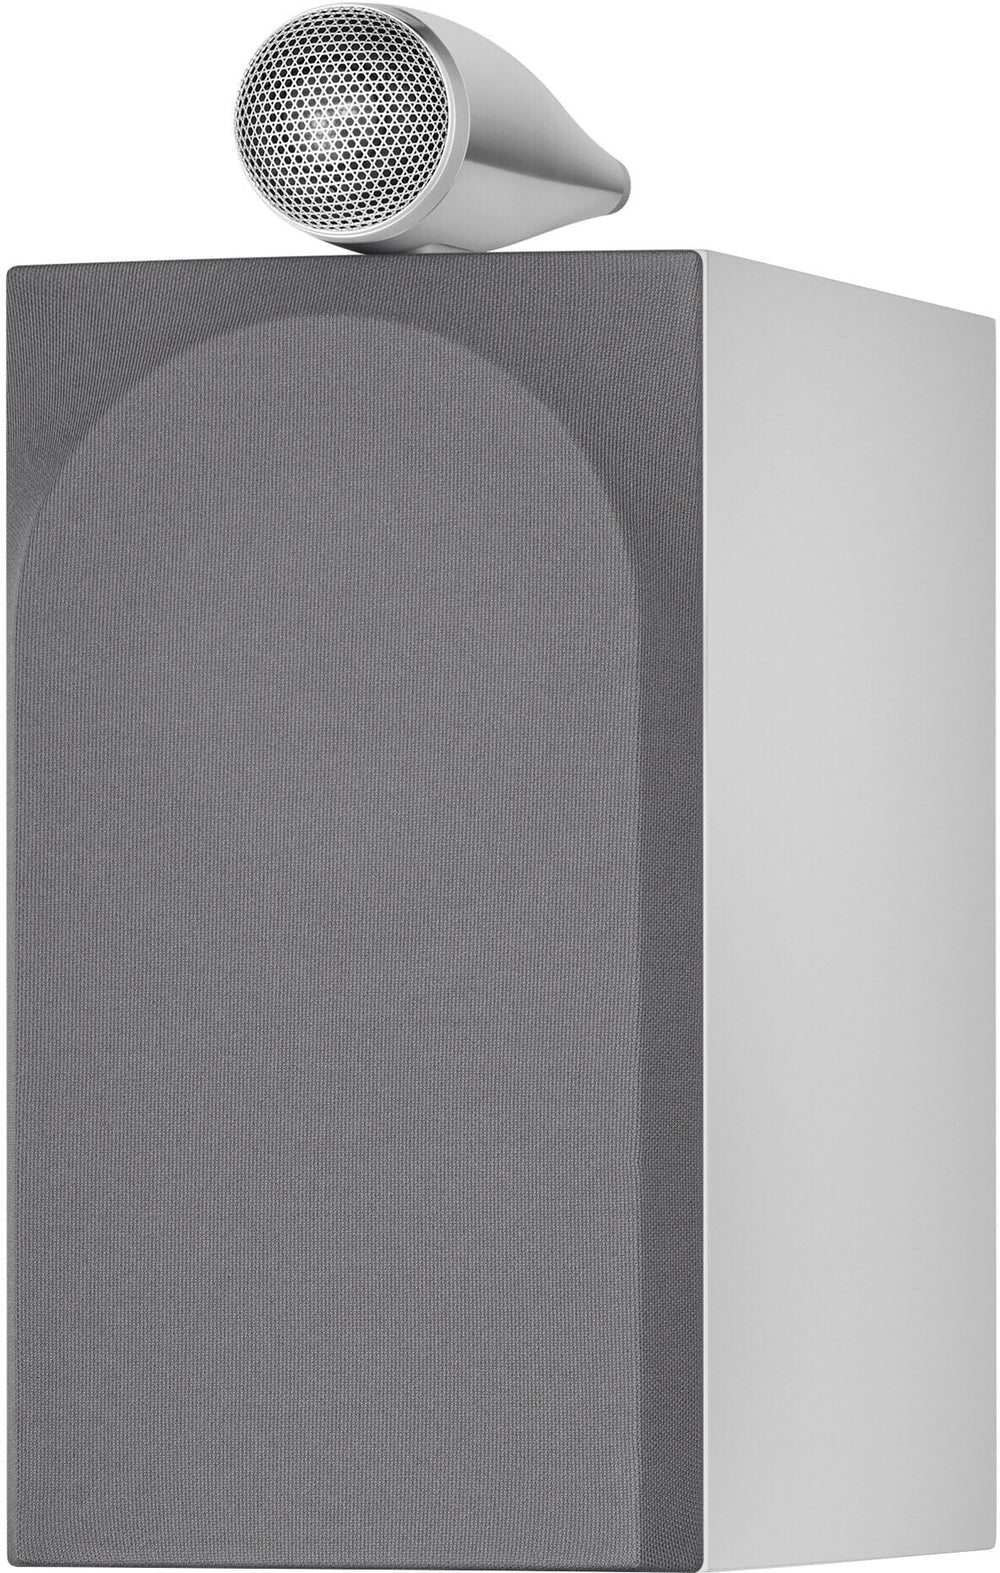 Bowers & Wilkins - 700 Series 3 Bookshelf Speaker w/ Tweeter on top, 6.5" midbass (pair) - White_1